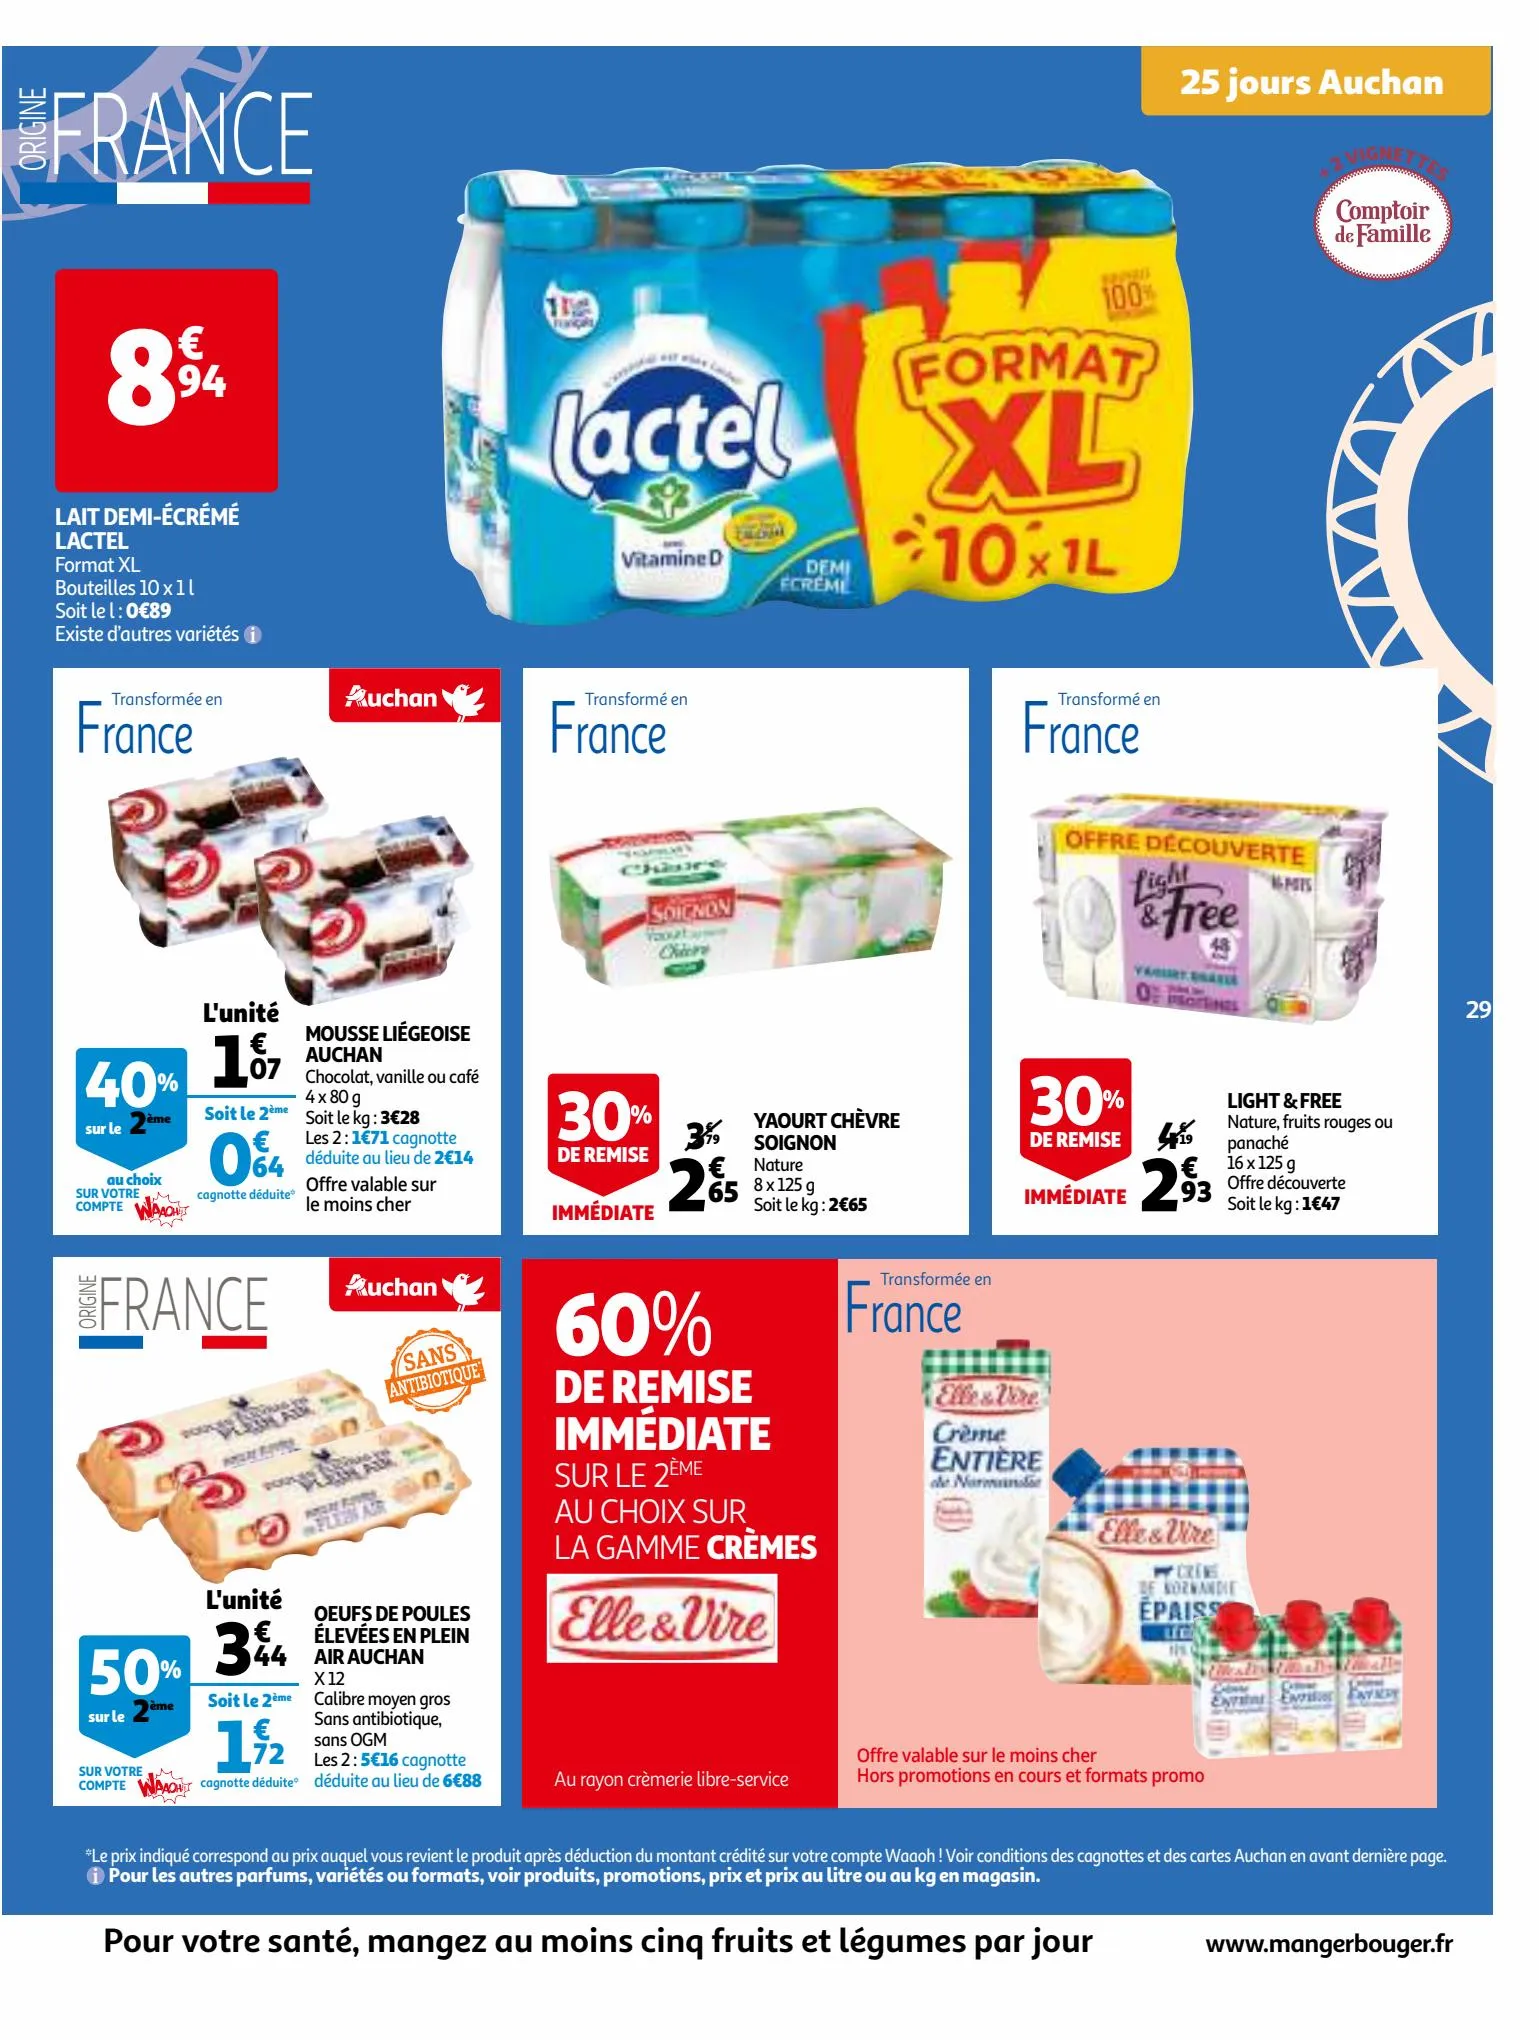 Catalogue 25 Jours Auchan, page 00029